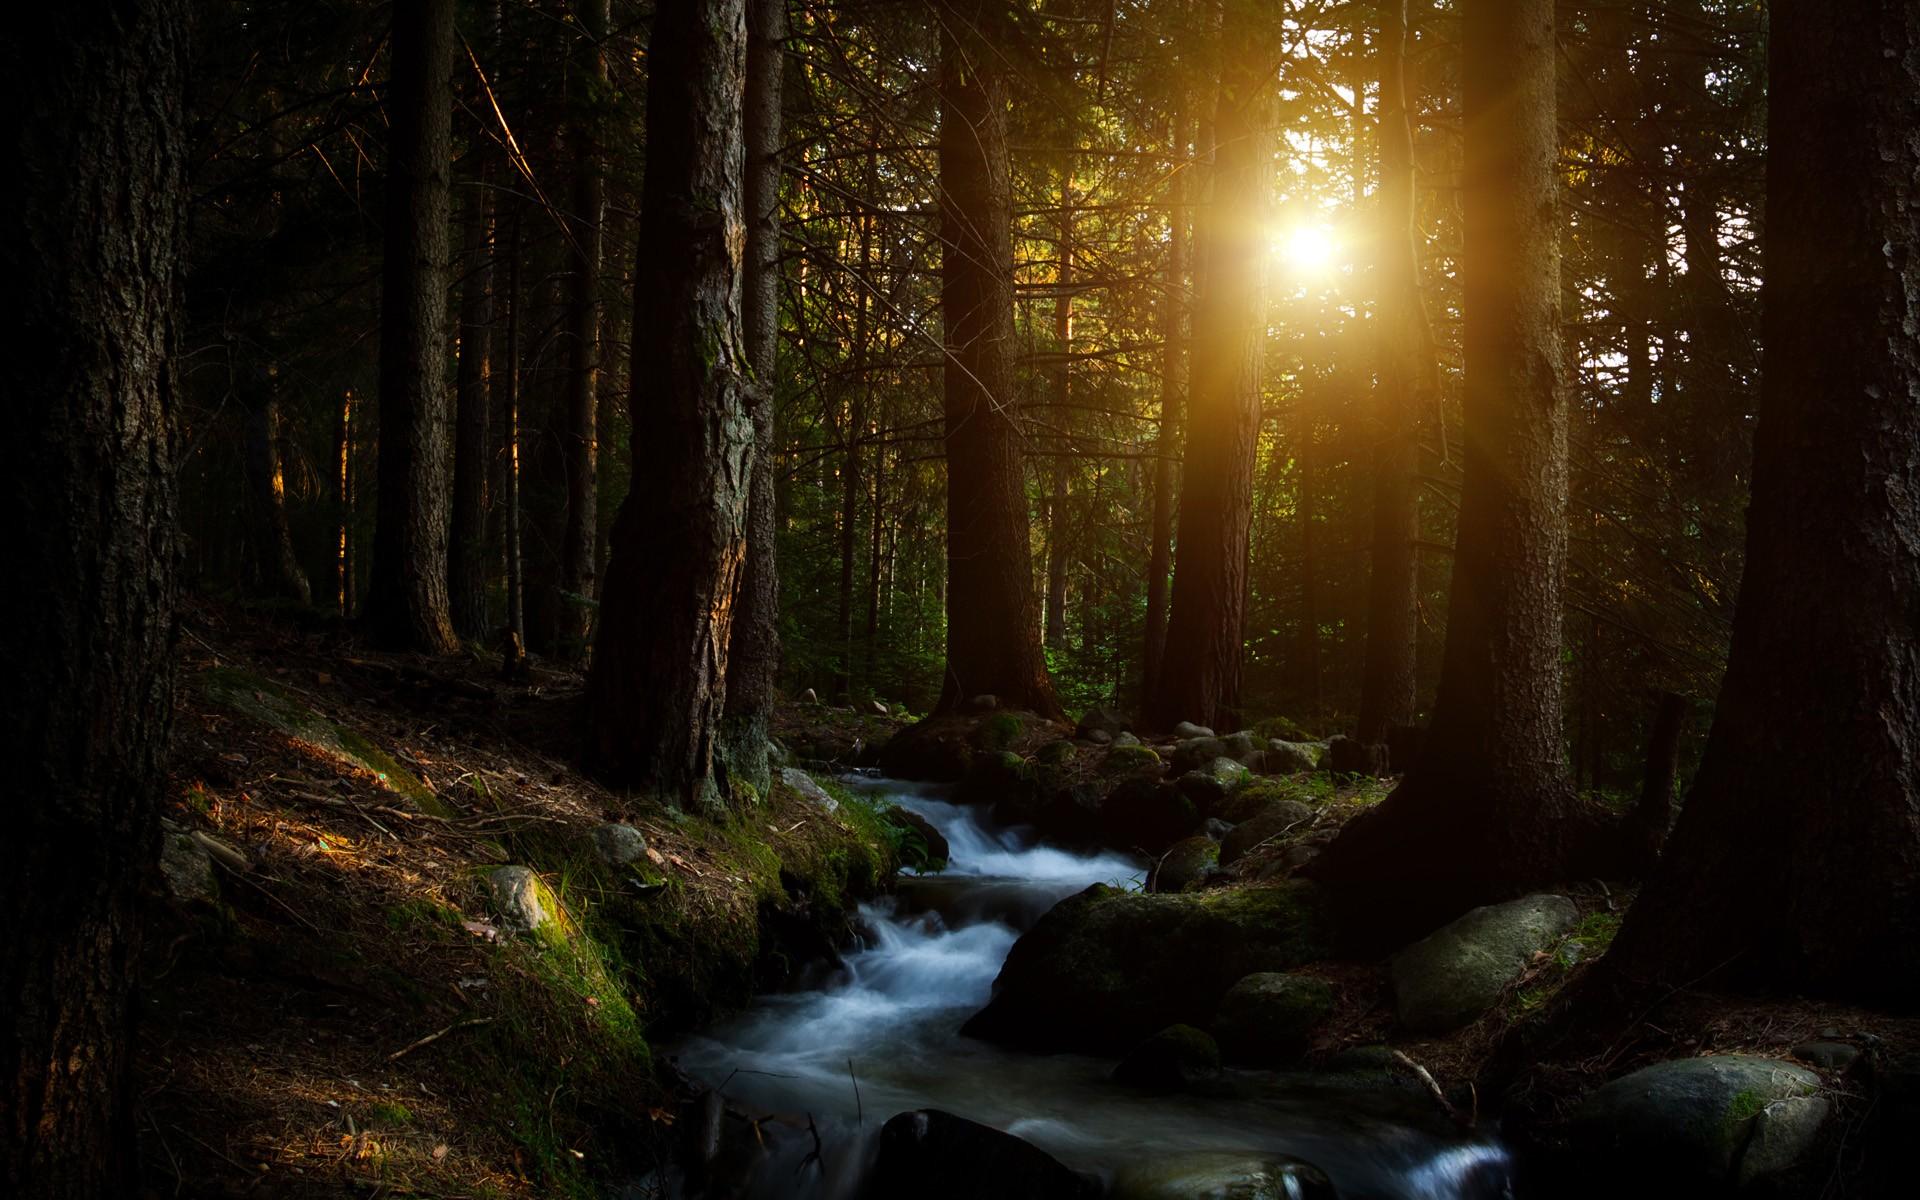 阳光照进森林深处唯美风格自然风景图片壁纸 - 摄影 - 亿图全景图库